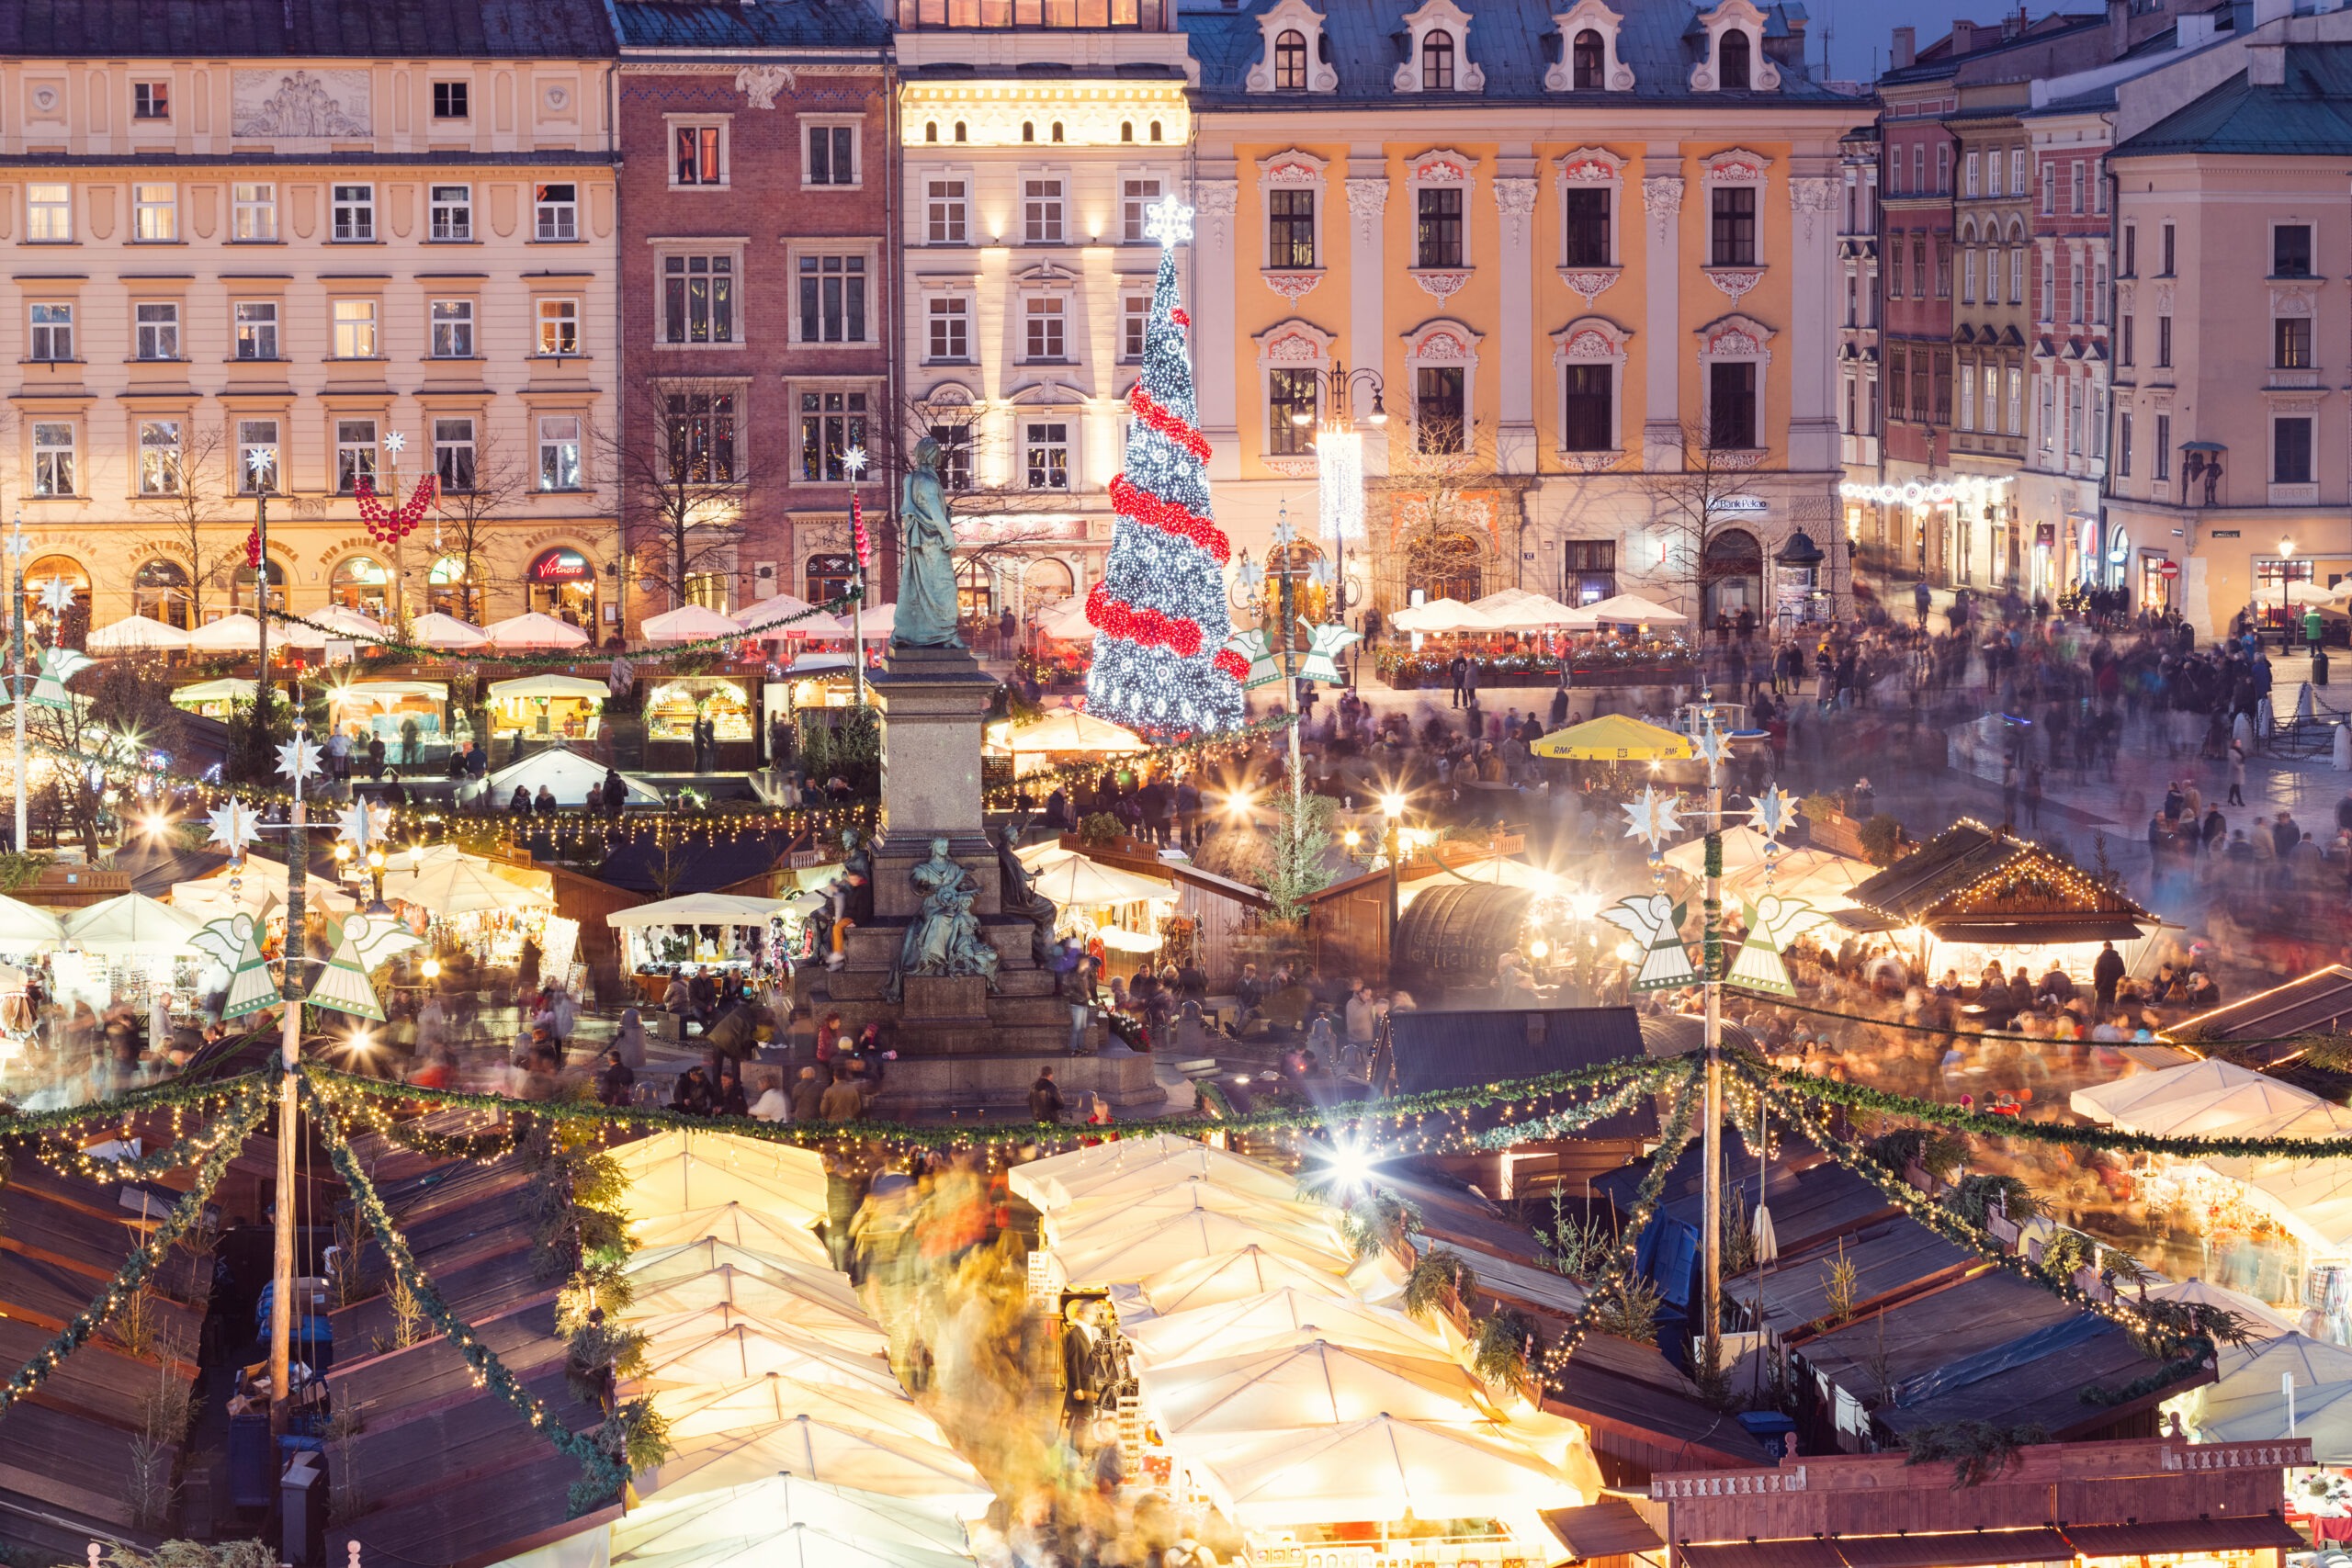 Julemarked på Main Market Square i Krakow